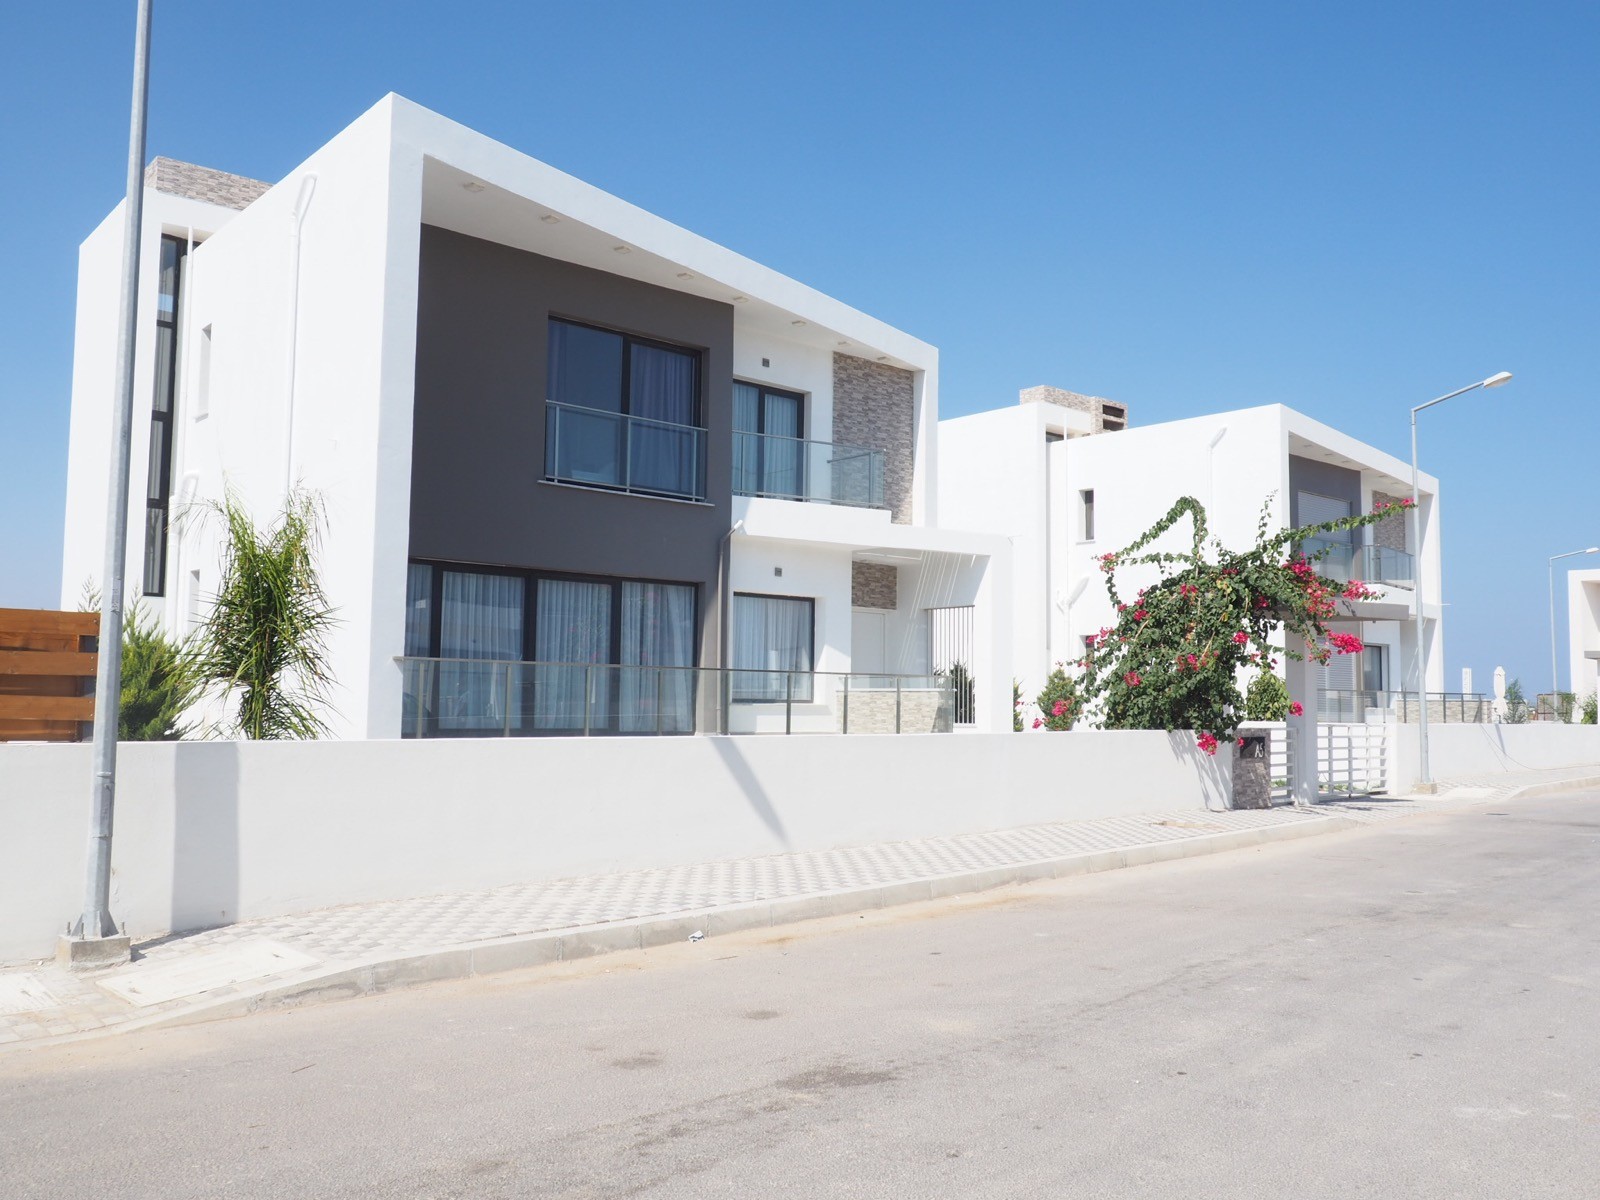 Satılık Kıbrıs Gazimağusa Tuzla Site içinde Dubleks Villa